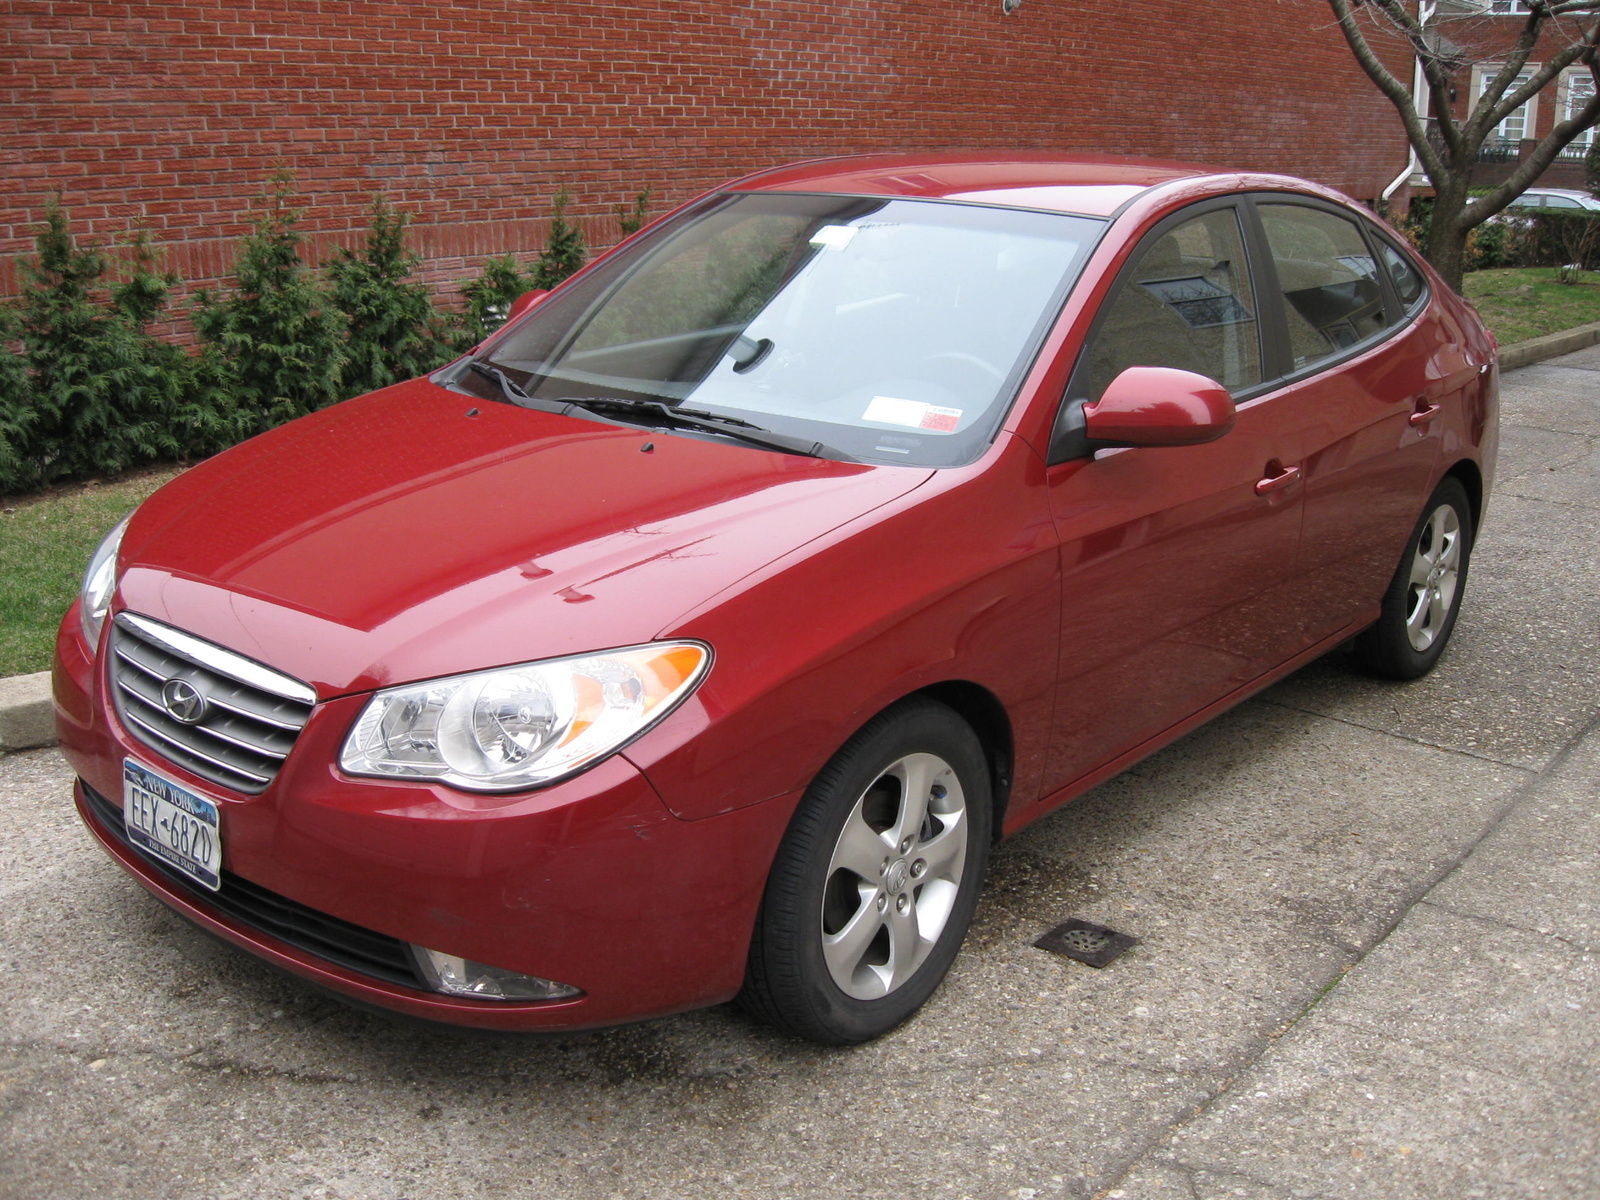 2008 Hyundai Elantra: Prices, Reviews & Pictures - CarGurus